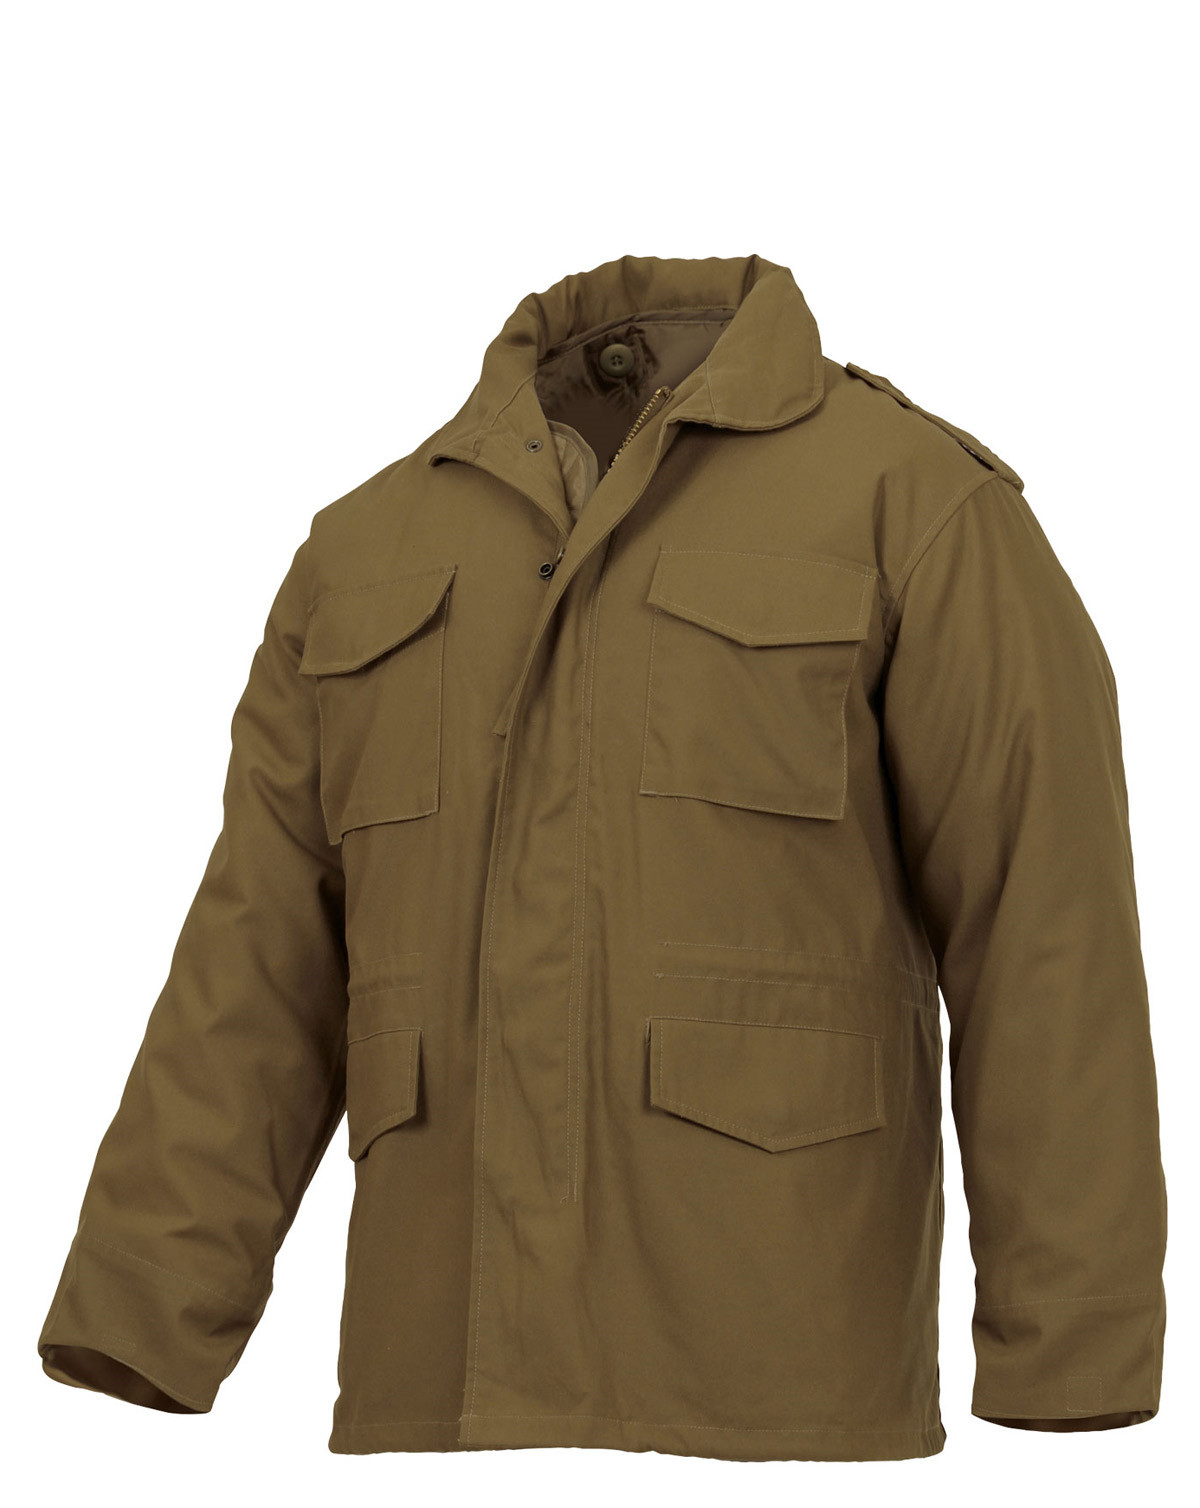 Rothco M65 Army jakke (Coyote Brun, L)